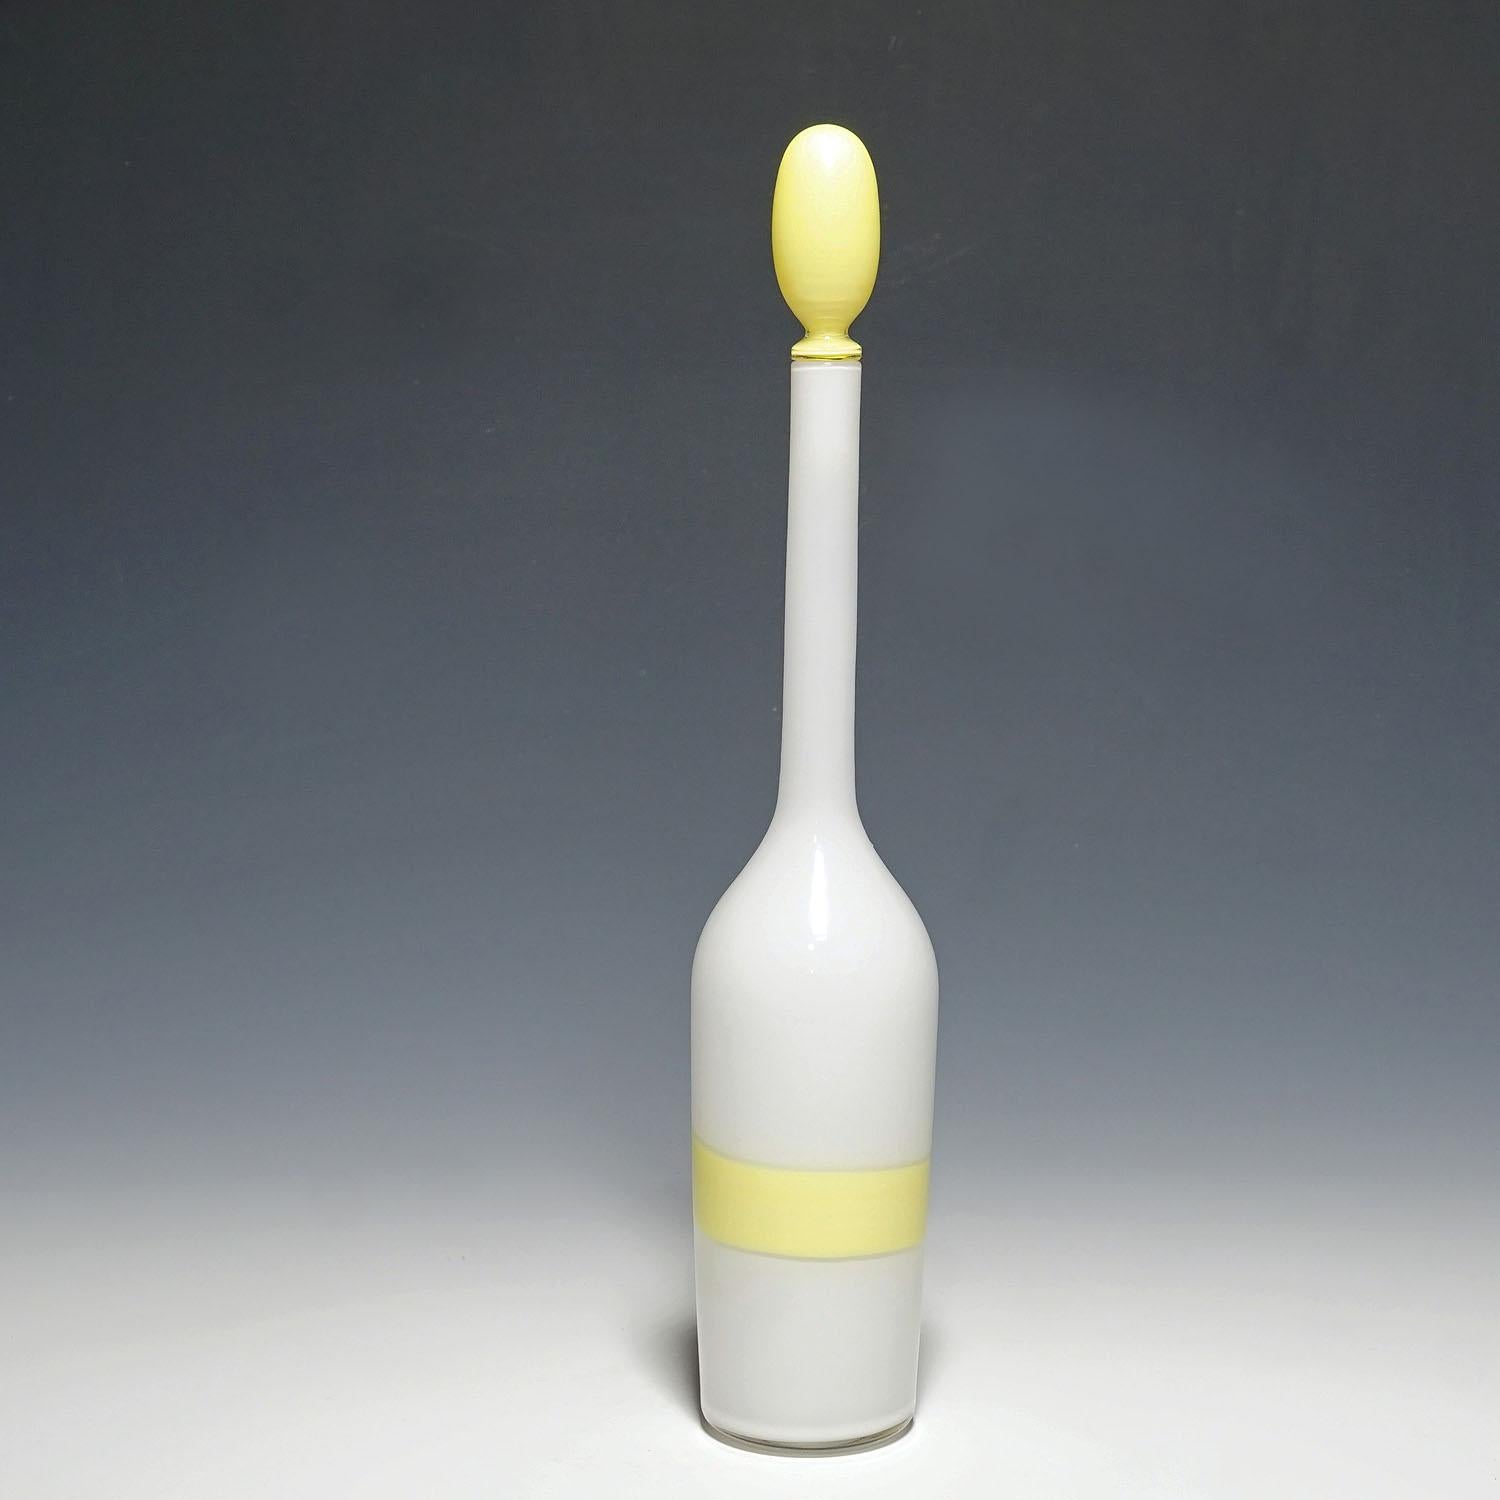 Venini Kunstglasflasche mit Fasce-Dekor in Gelb, Murano 1950er Jahre

Eine große Kunstglasflasche aus weißem, opakem Glas mit gelbem Stopfen und einem gelben 